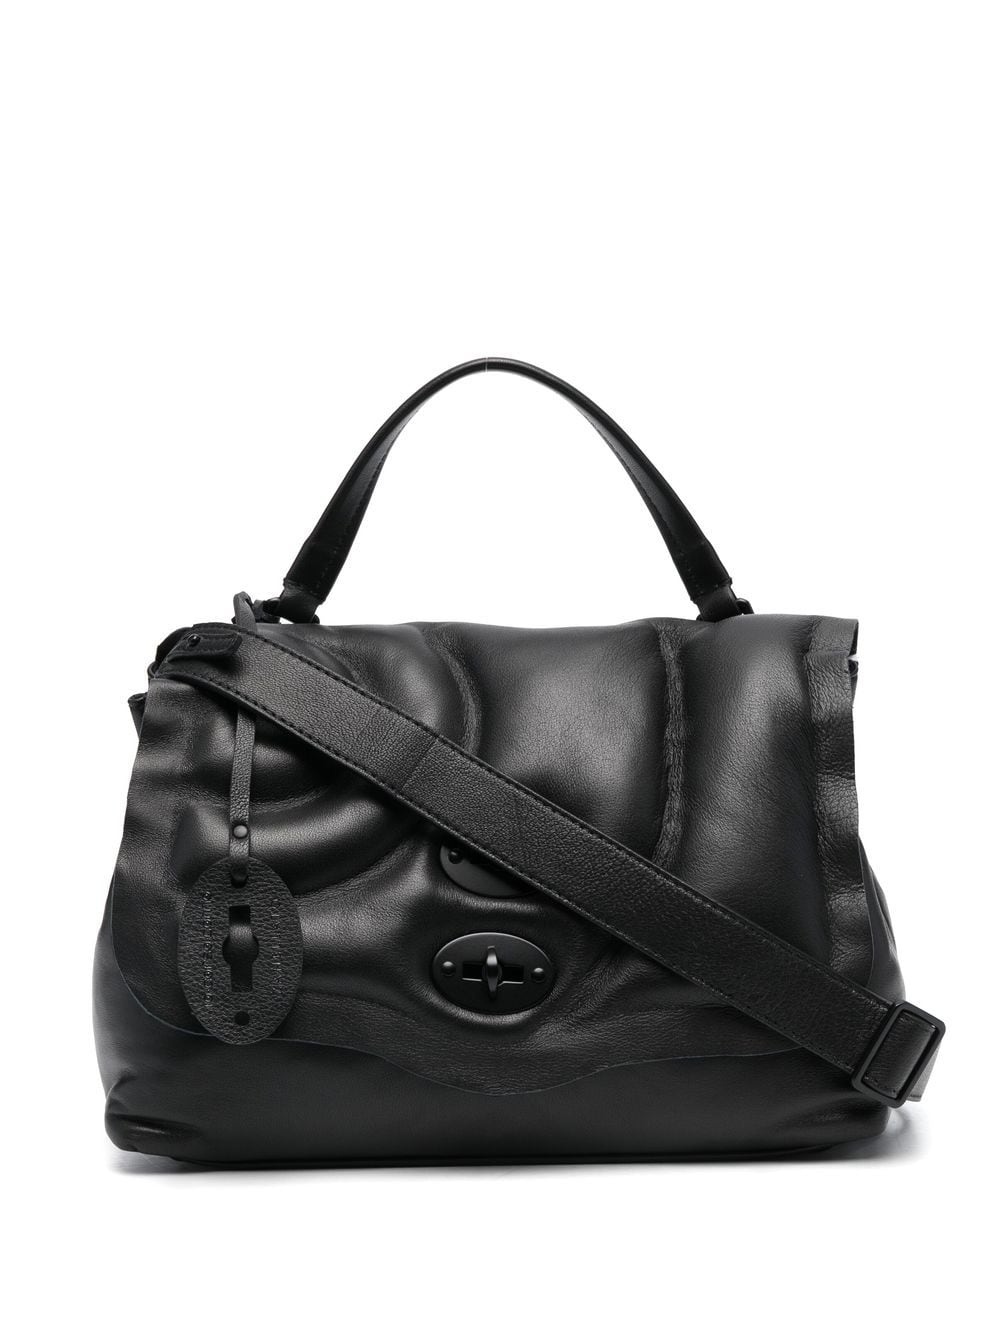 Zanellato leather shoulder bag - Black von Zanellato